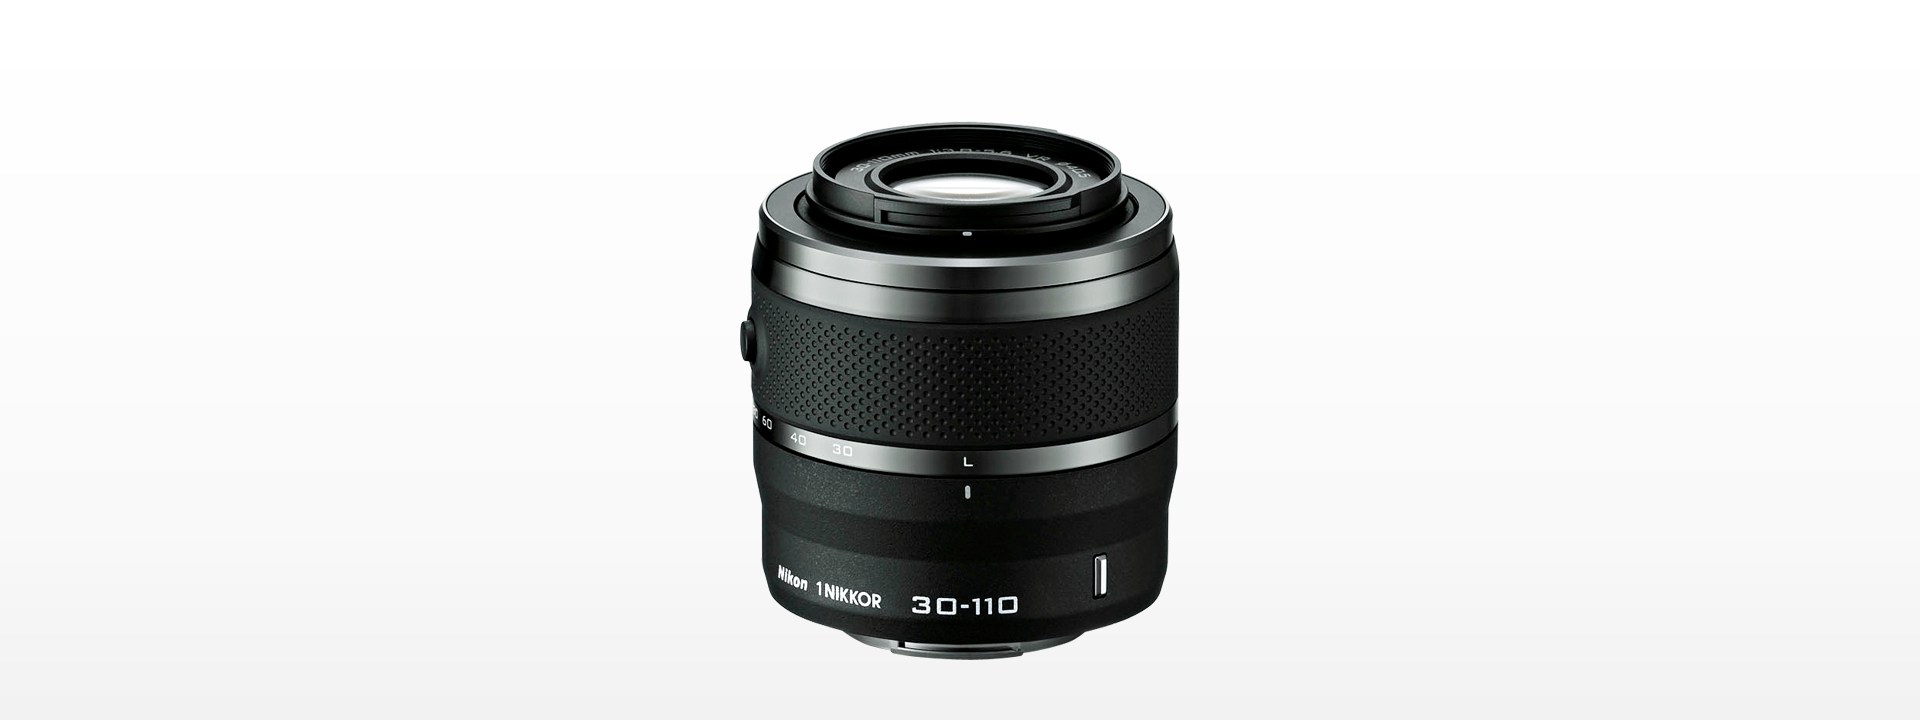 ニコン ミラーレス 望遠レンズ Nikon 1 NIKKOR VR 30-110